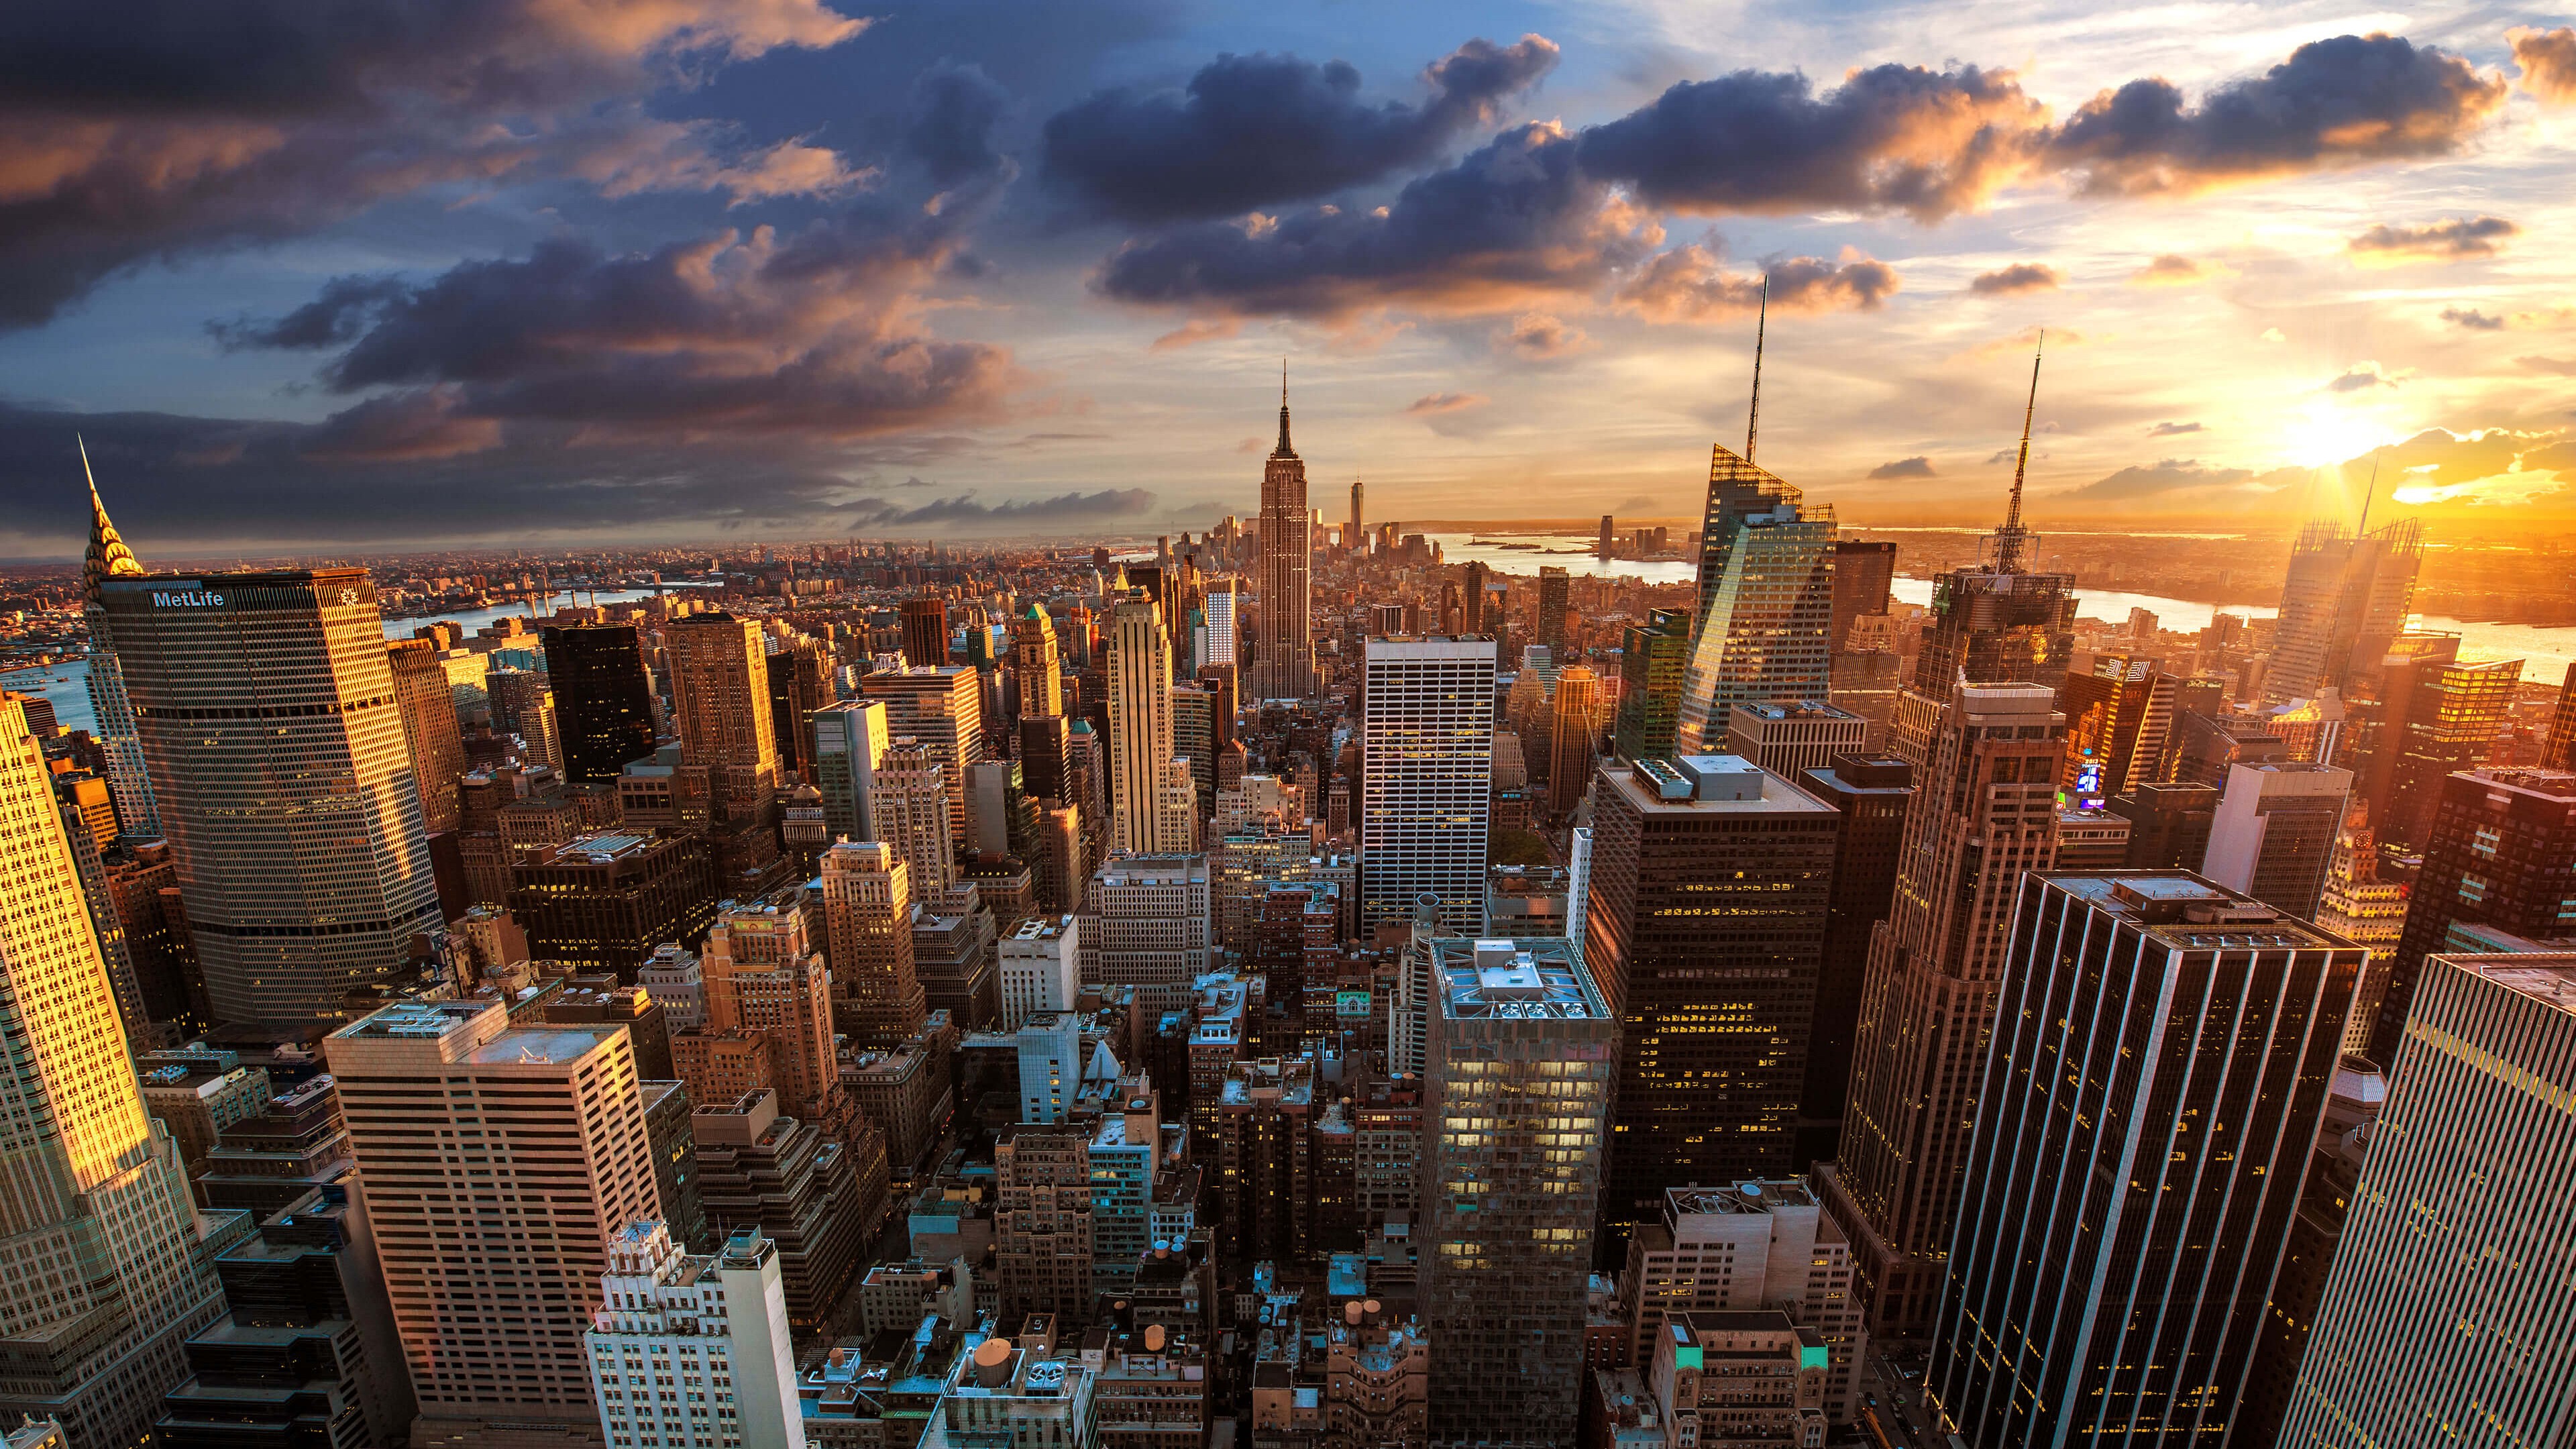 New York City Skyline At Sunset Wallpaper For Desktop 4k X